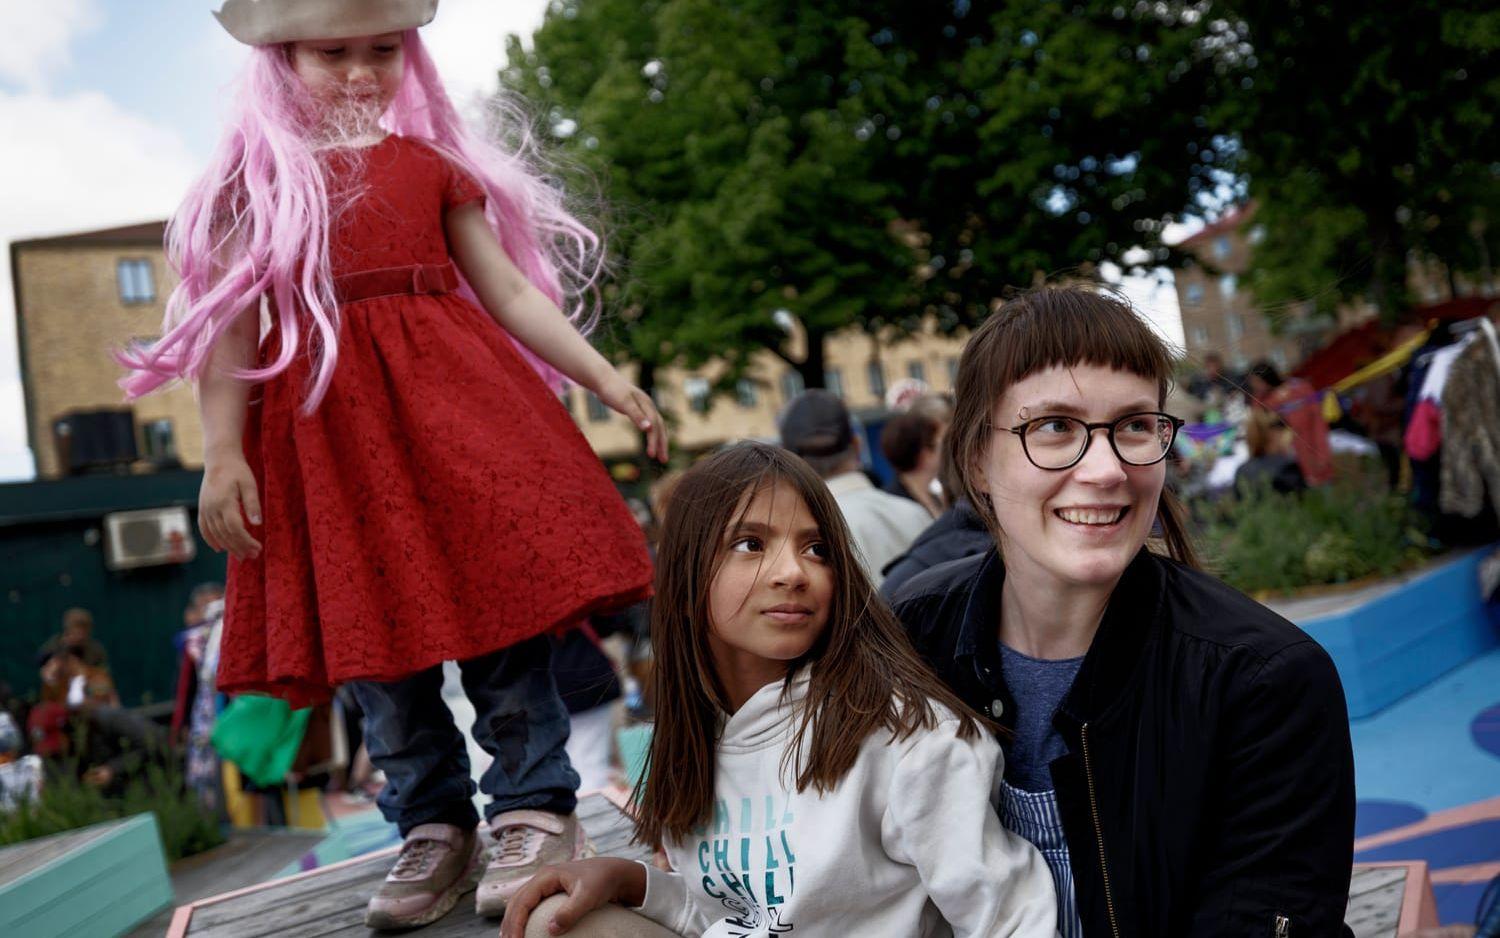 Maja Risberg, 35 år, med barnen Rut, 4 år, och Signe, 8 år, från Mölndal, har just kommit och ser fram emot att leta fynd. ”Det är roligt att det är så mycket folk. Och tråkigt att man inte hinner kolla på allt”, säger hon.